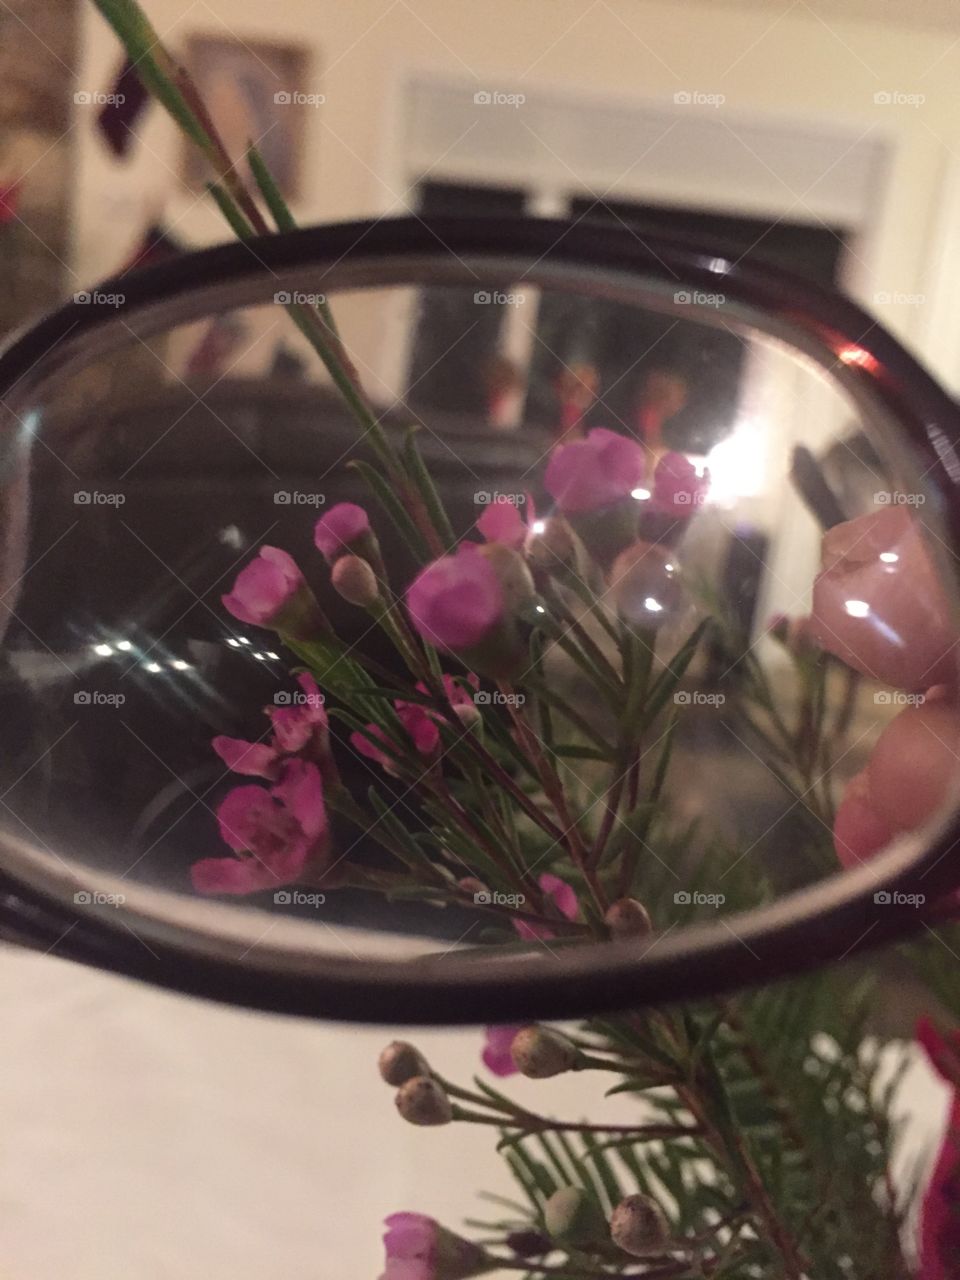 Framed flowers